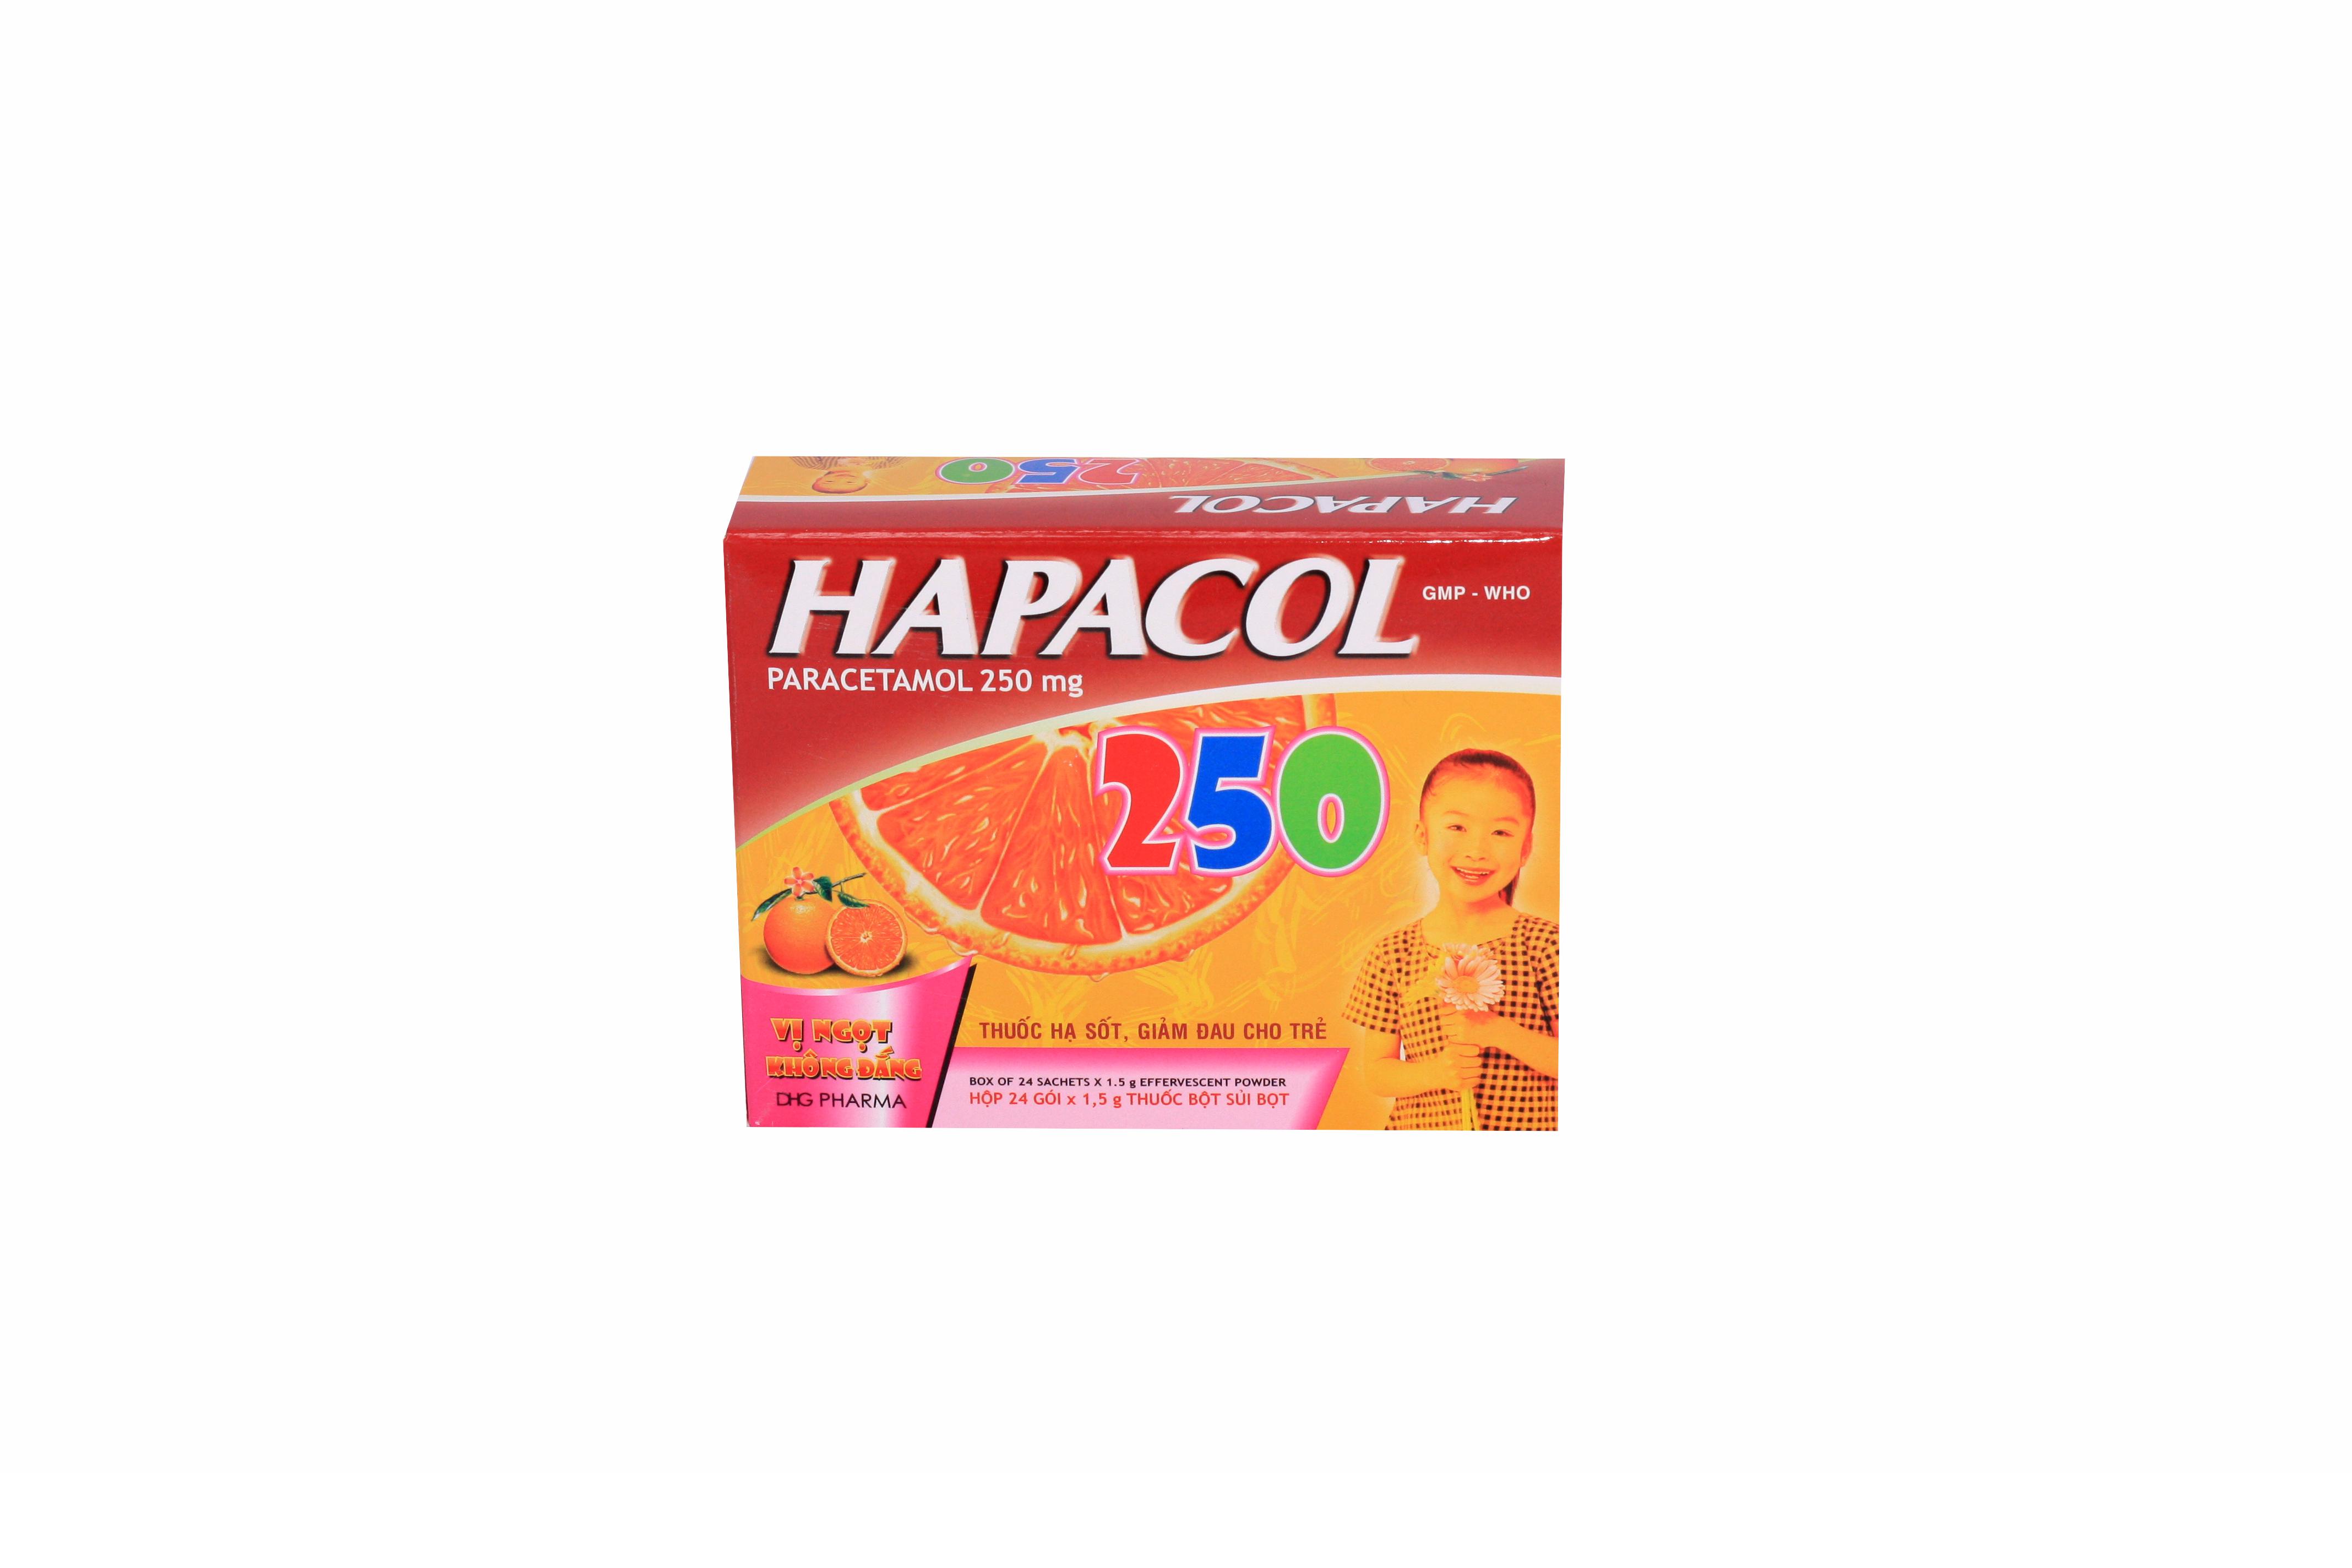 Hapacol 250mg (Paracetamol) DHG Pharma (H/24g)